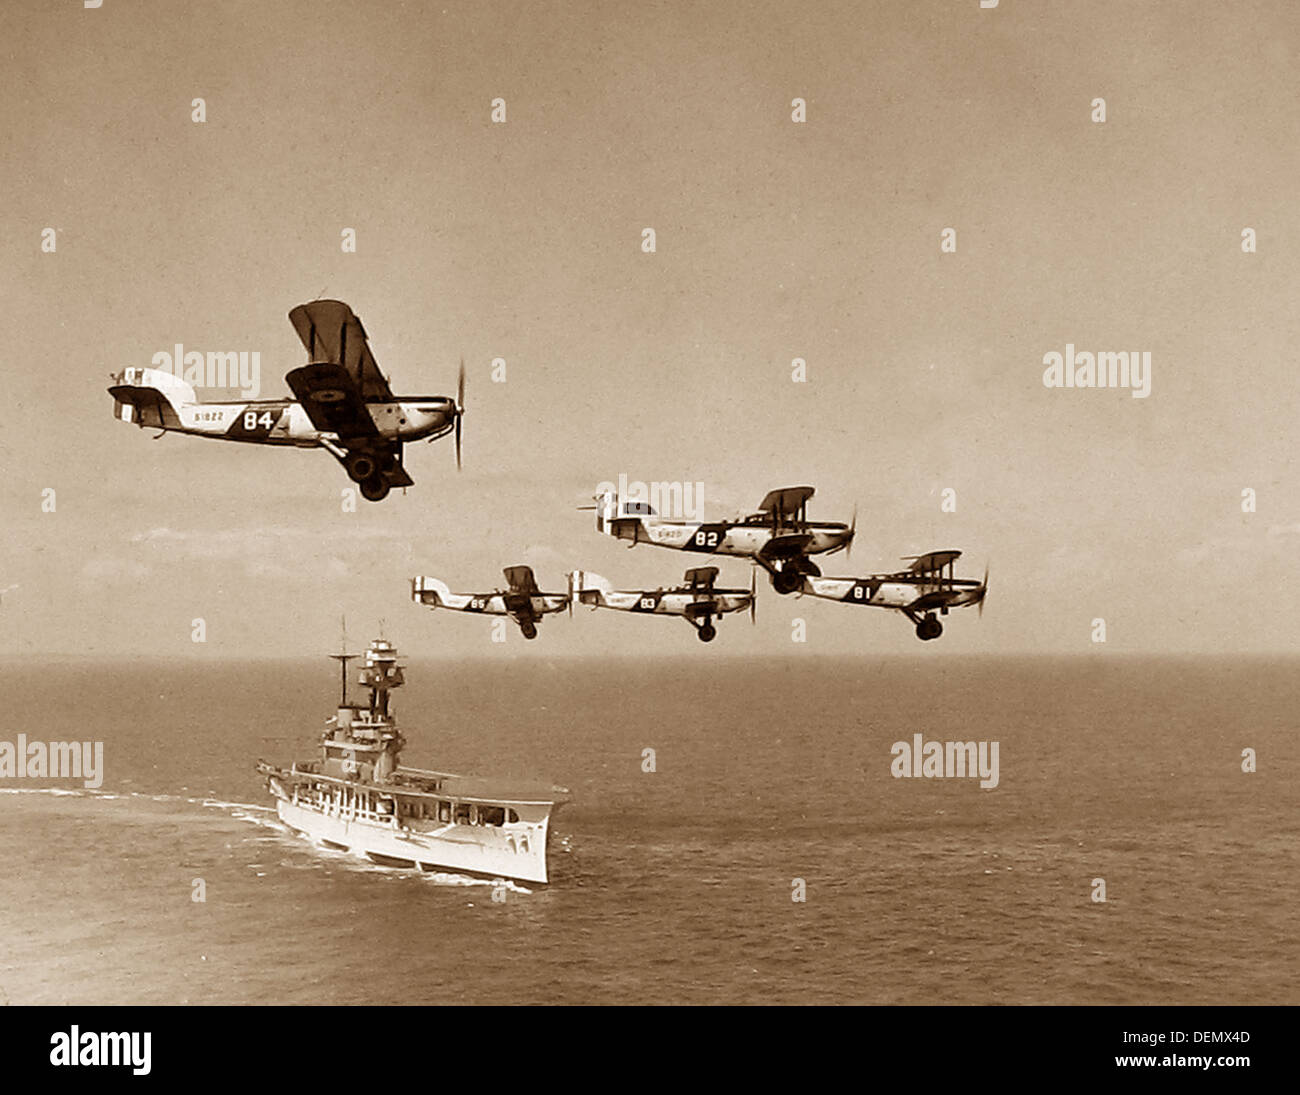 Porte-avions de la Royal Navy et les biplans éventuellement Années 1920 Banque D'Images